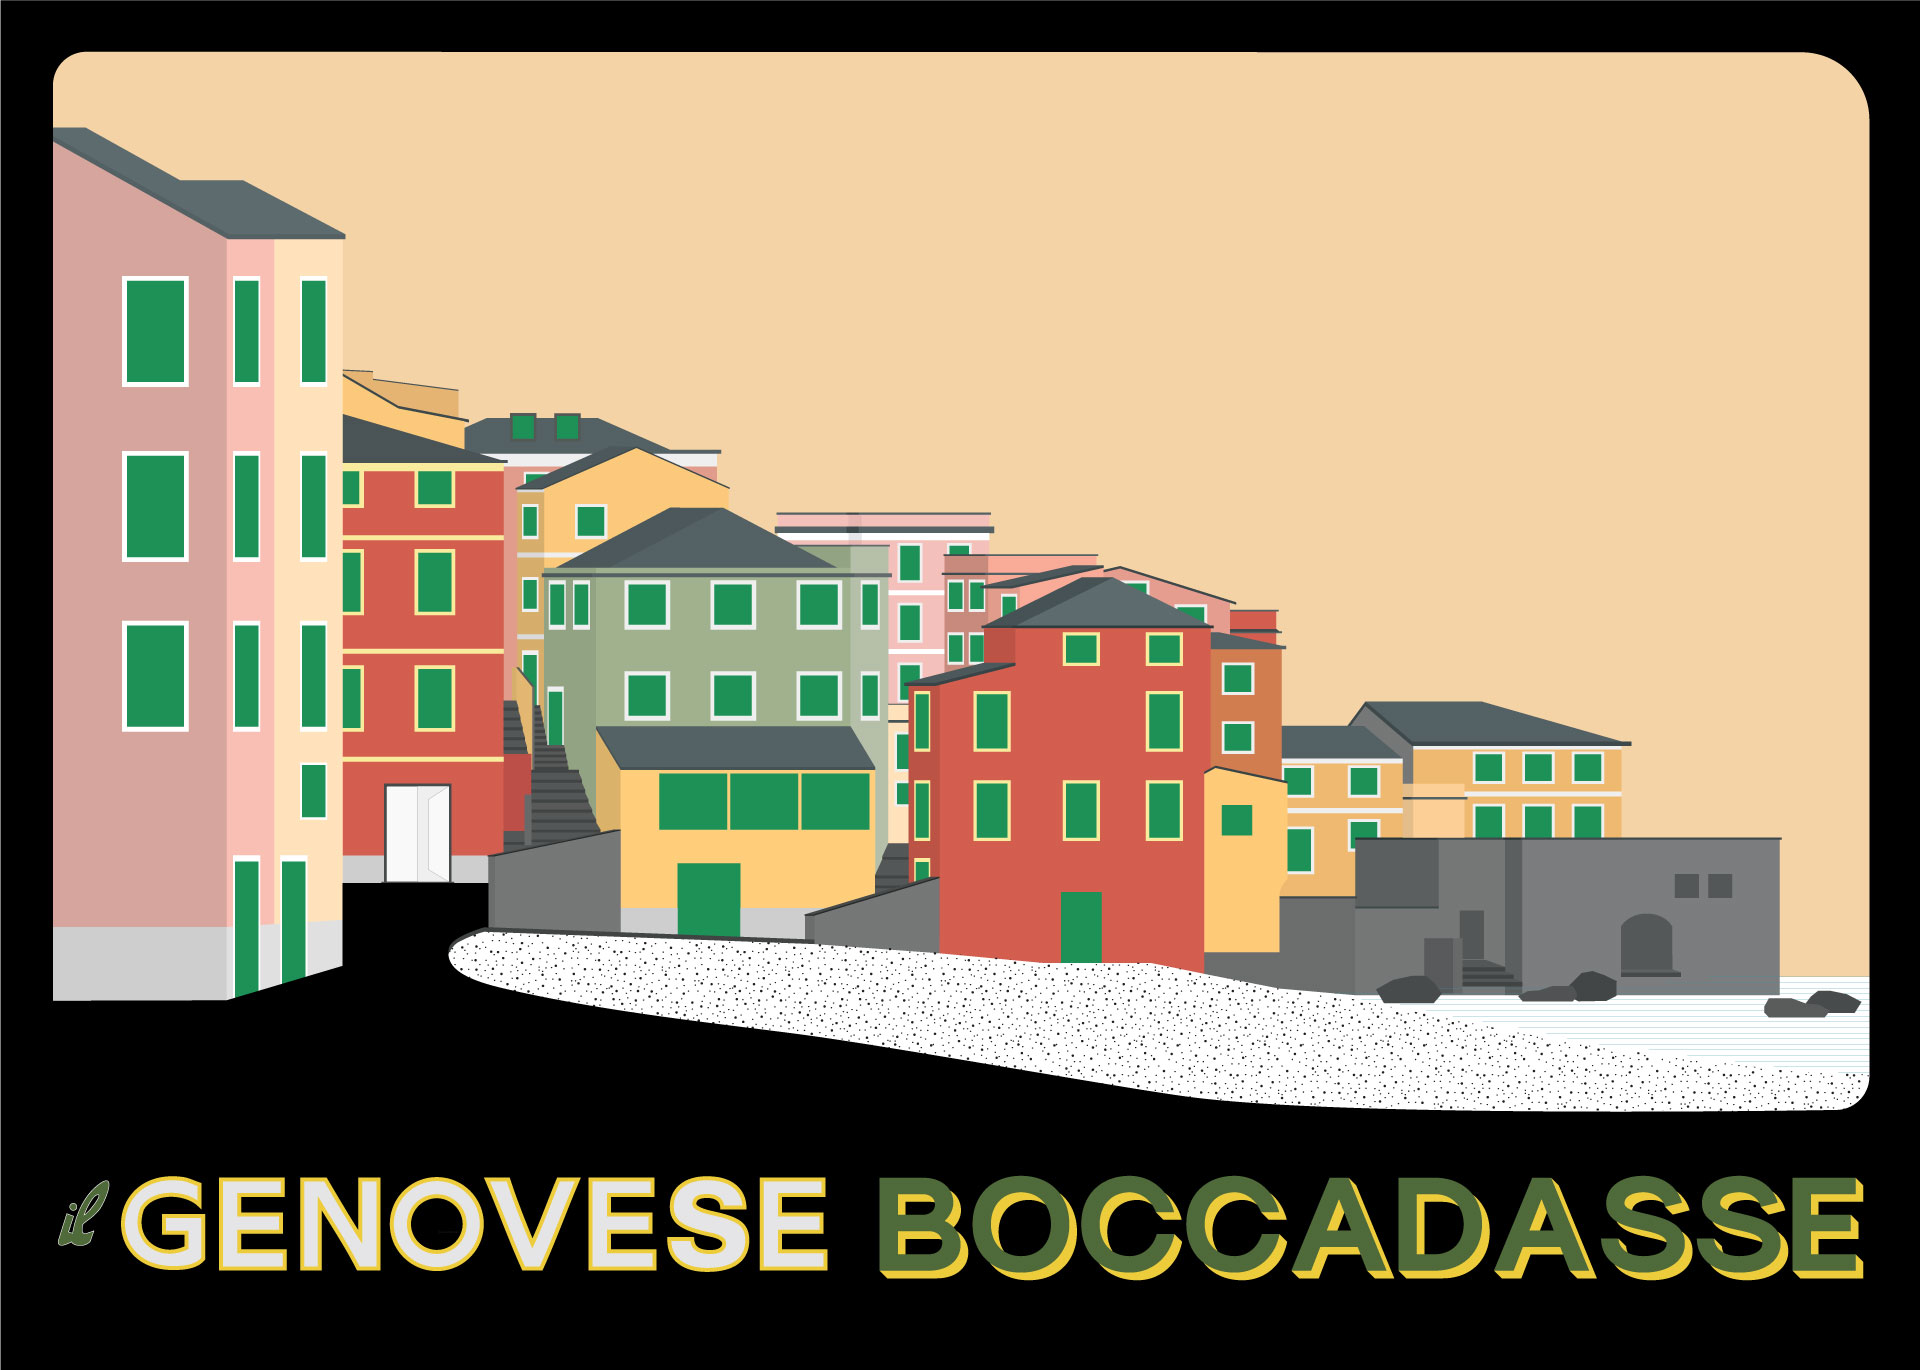 Il Genovese Boccadasse, a contemporary sciamadda - LINEARAMA + Scelsi - Illustration